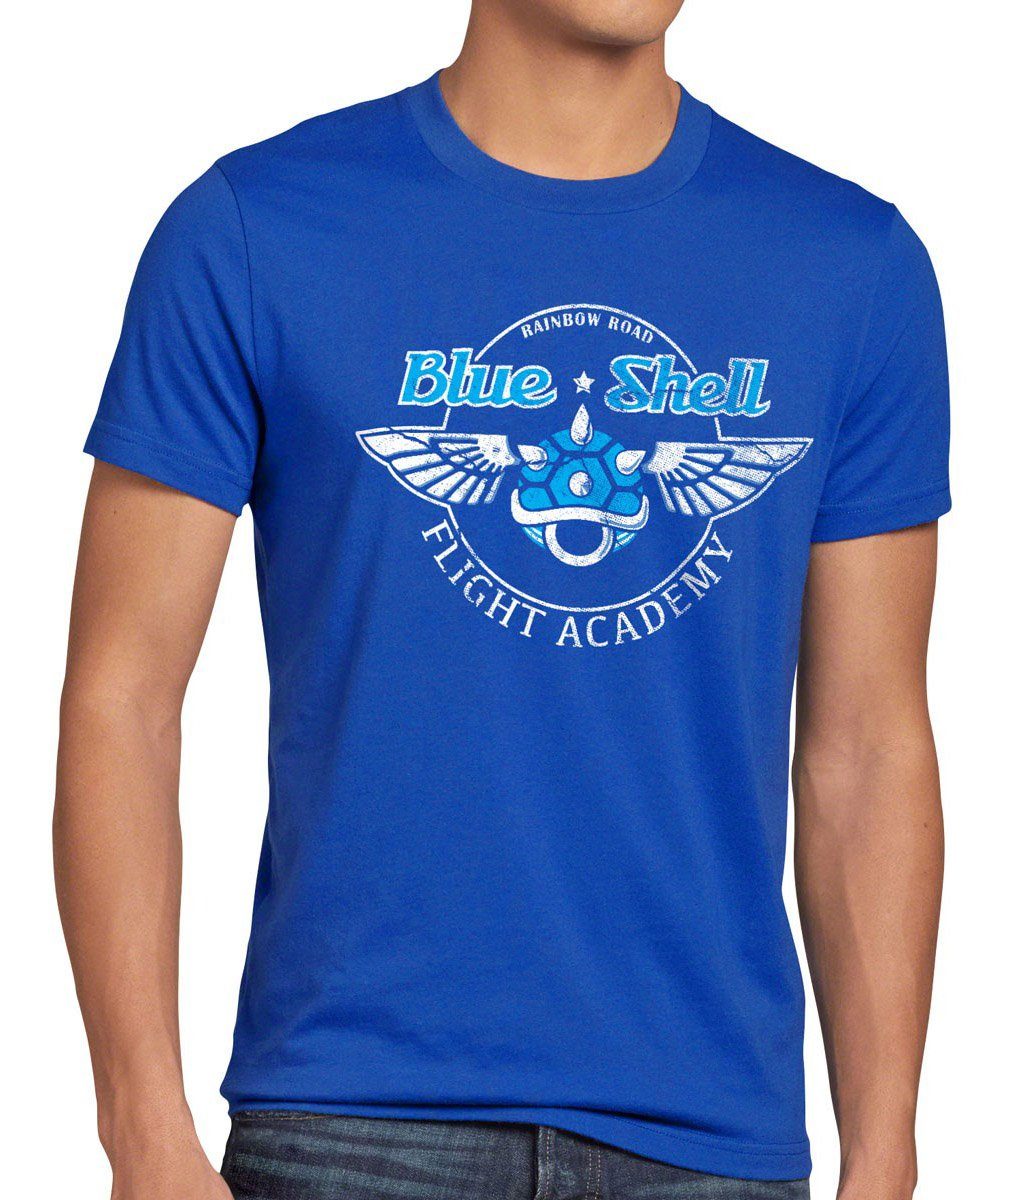 style3 Print-Shirt Herren T-Shirt Blue Shell luigi academy panzer kart mario wii switch rennen auto blau